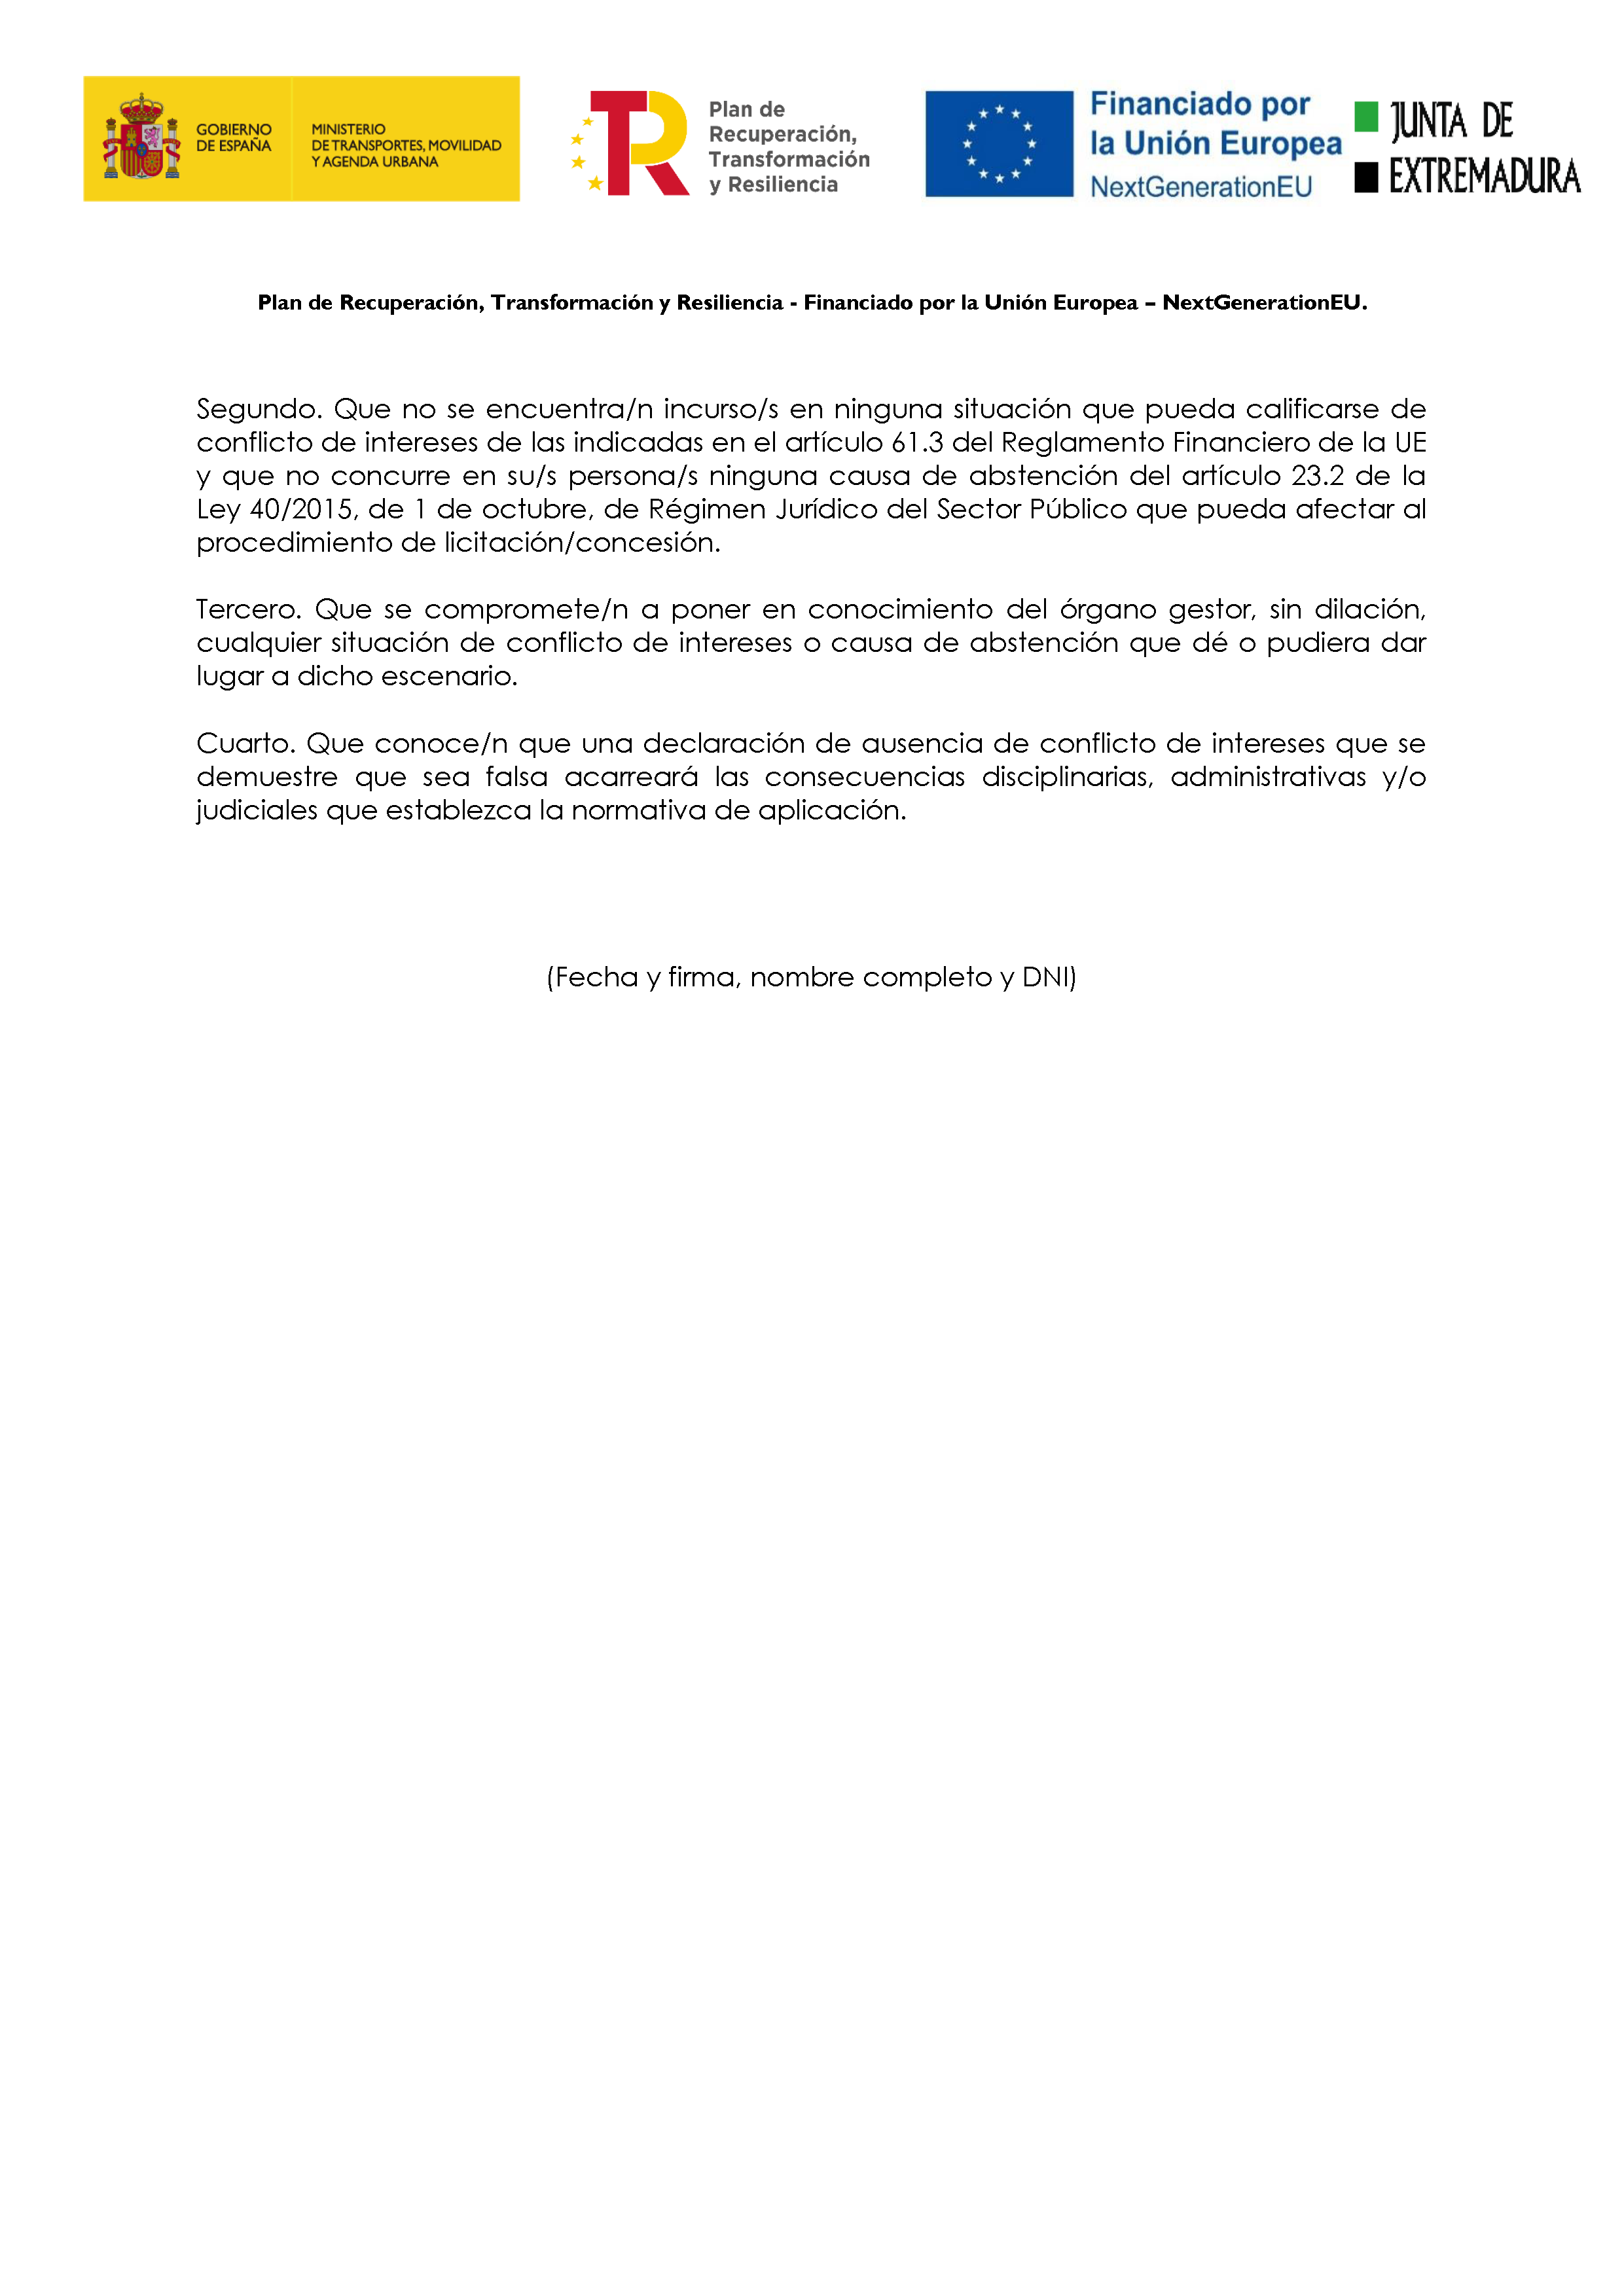 ANEXO V MODELO DECLARACION DE AUSENCIA DE CONFLICTO DE INTERESES (DACI) PAG. 2